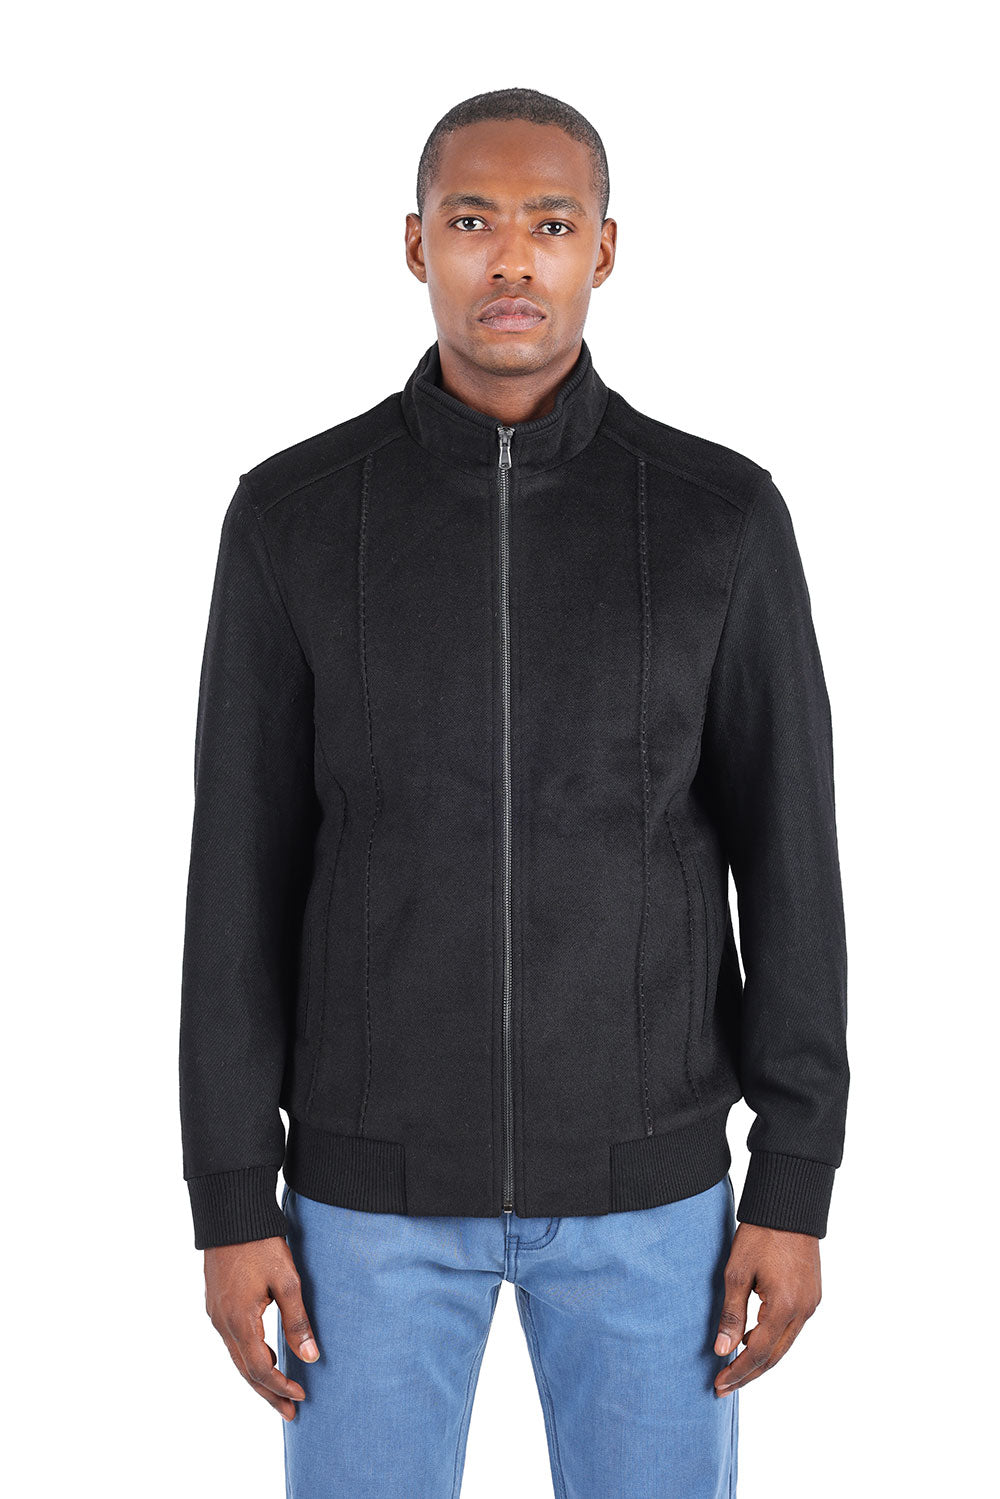 Barabas Men's Suede Warm Comfortable Varsity Jacket 3BH84 Black